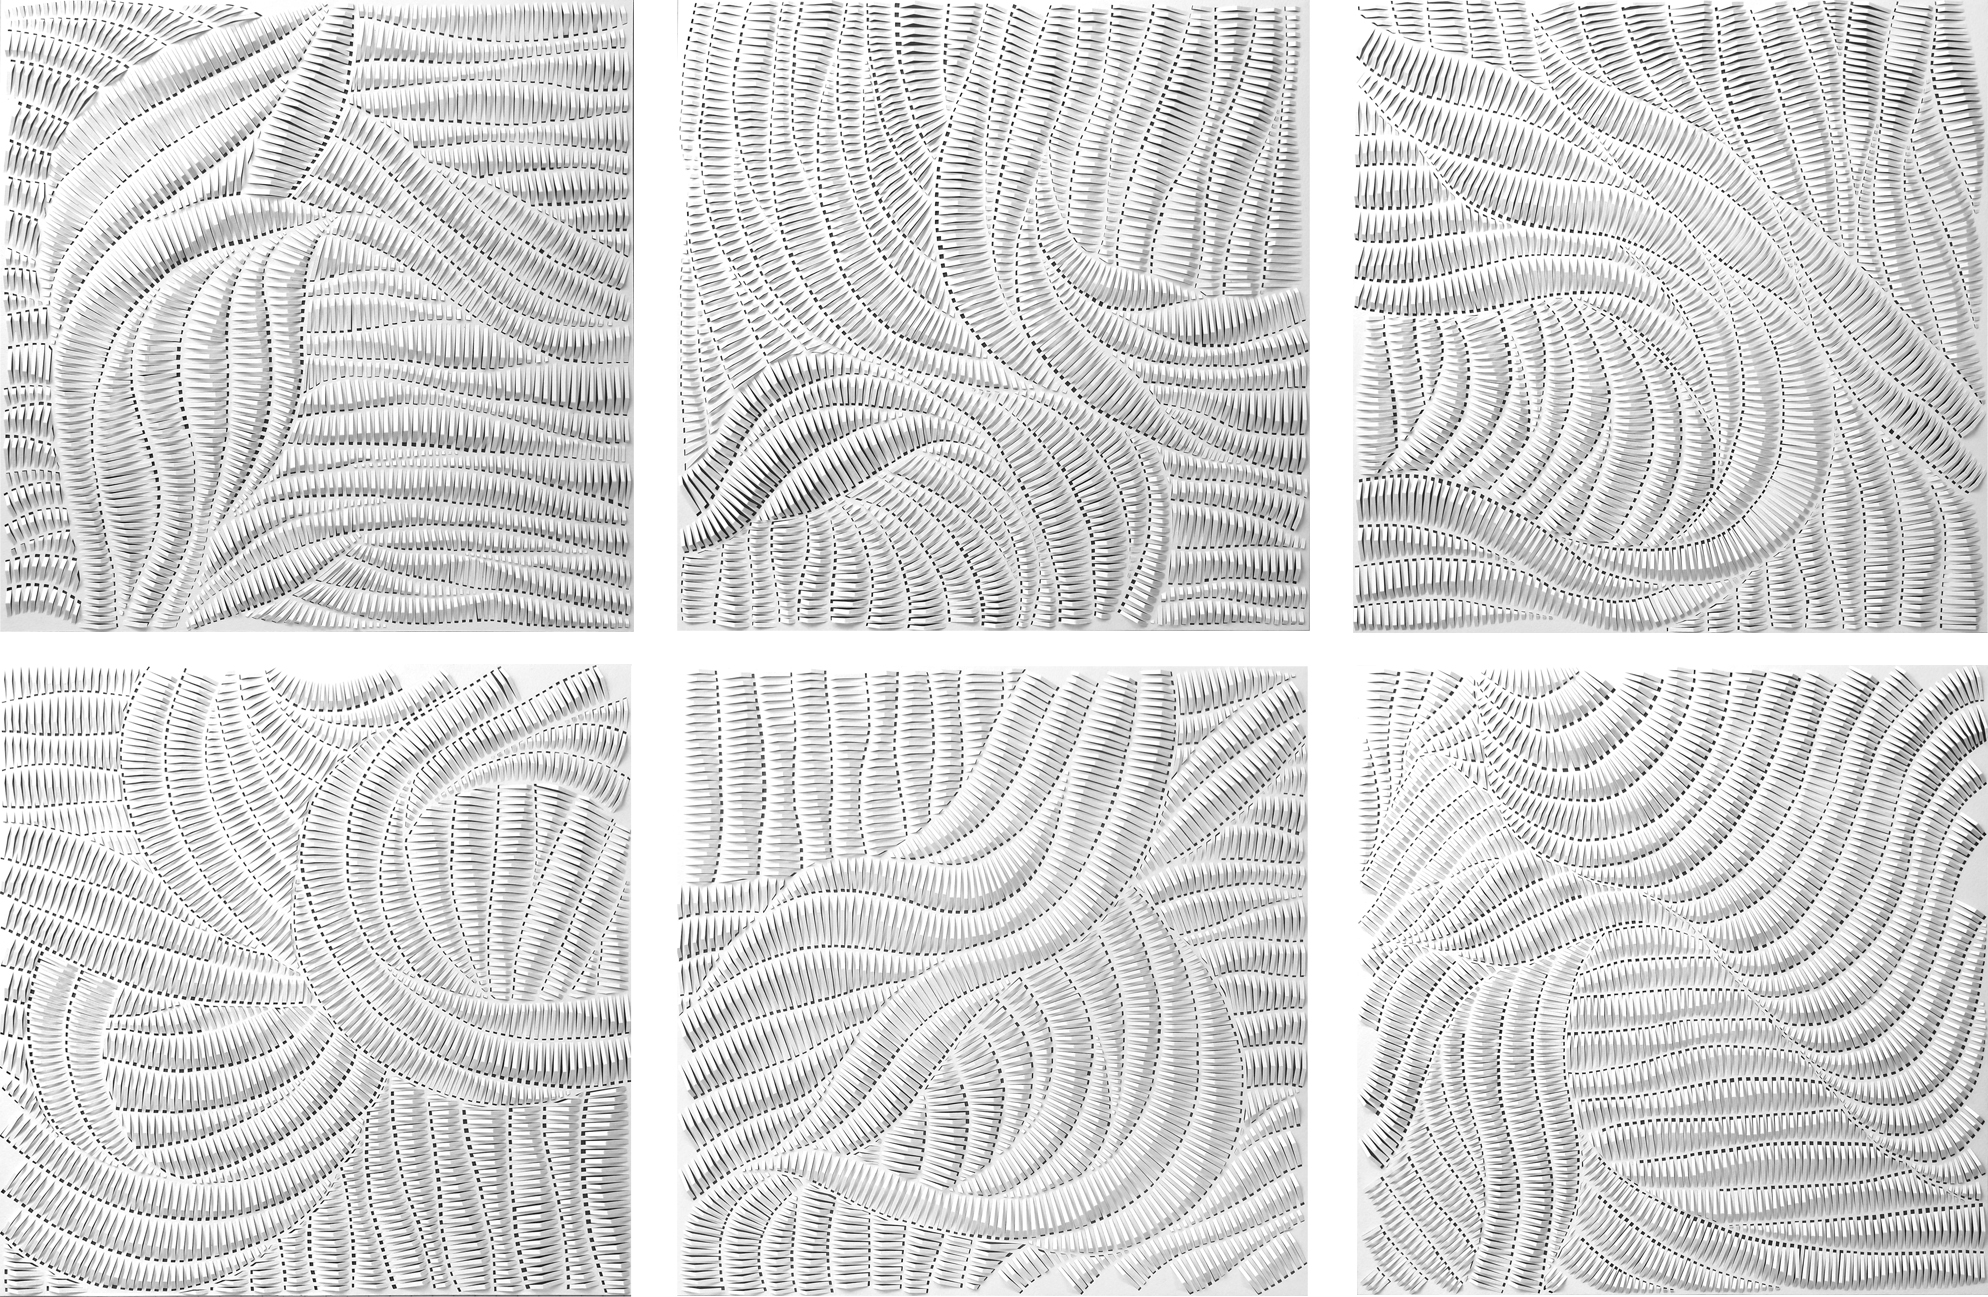  Rachel Doniger (American, b. 1979). Infinity I-VI, 2016. Cut Paper Reliefs. © Rachel Doniger